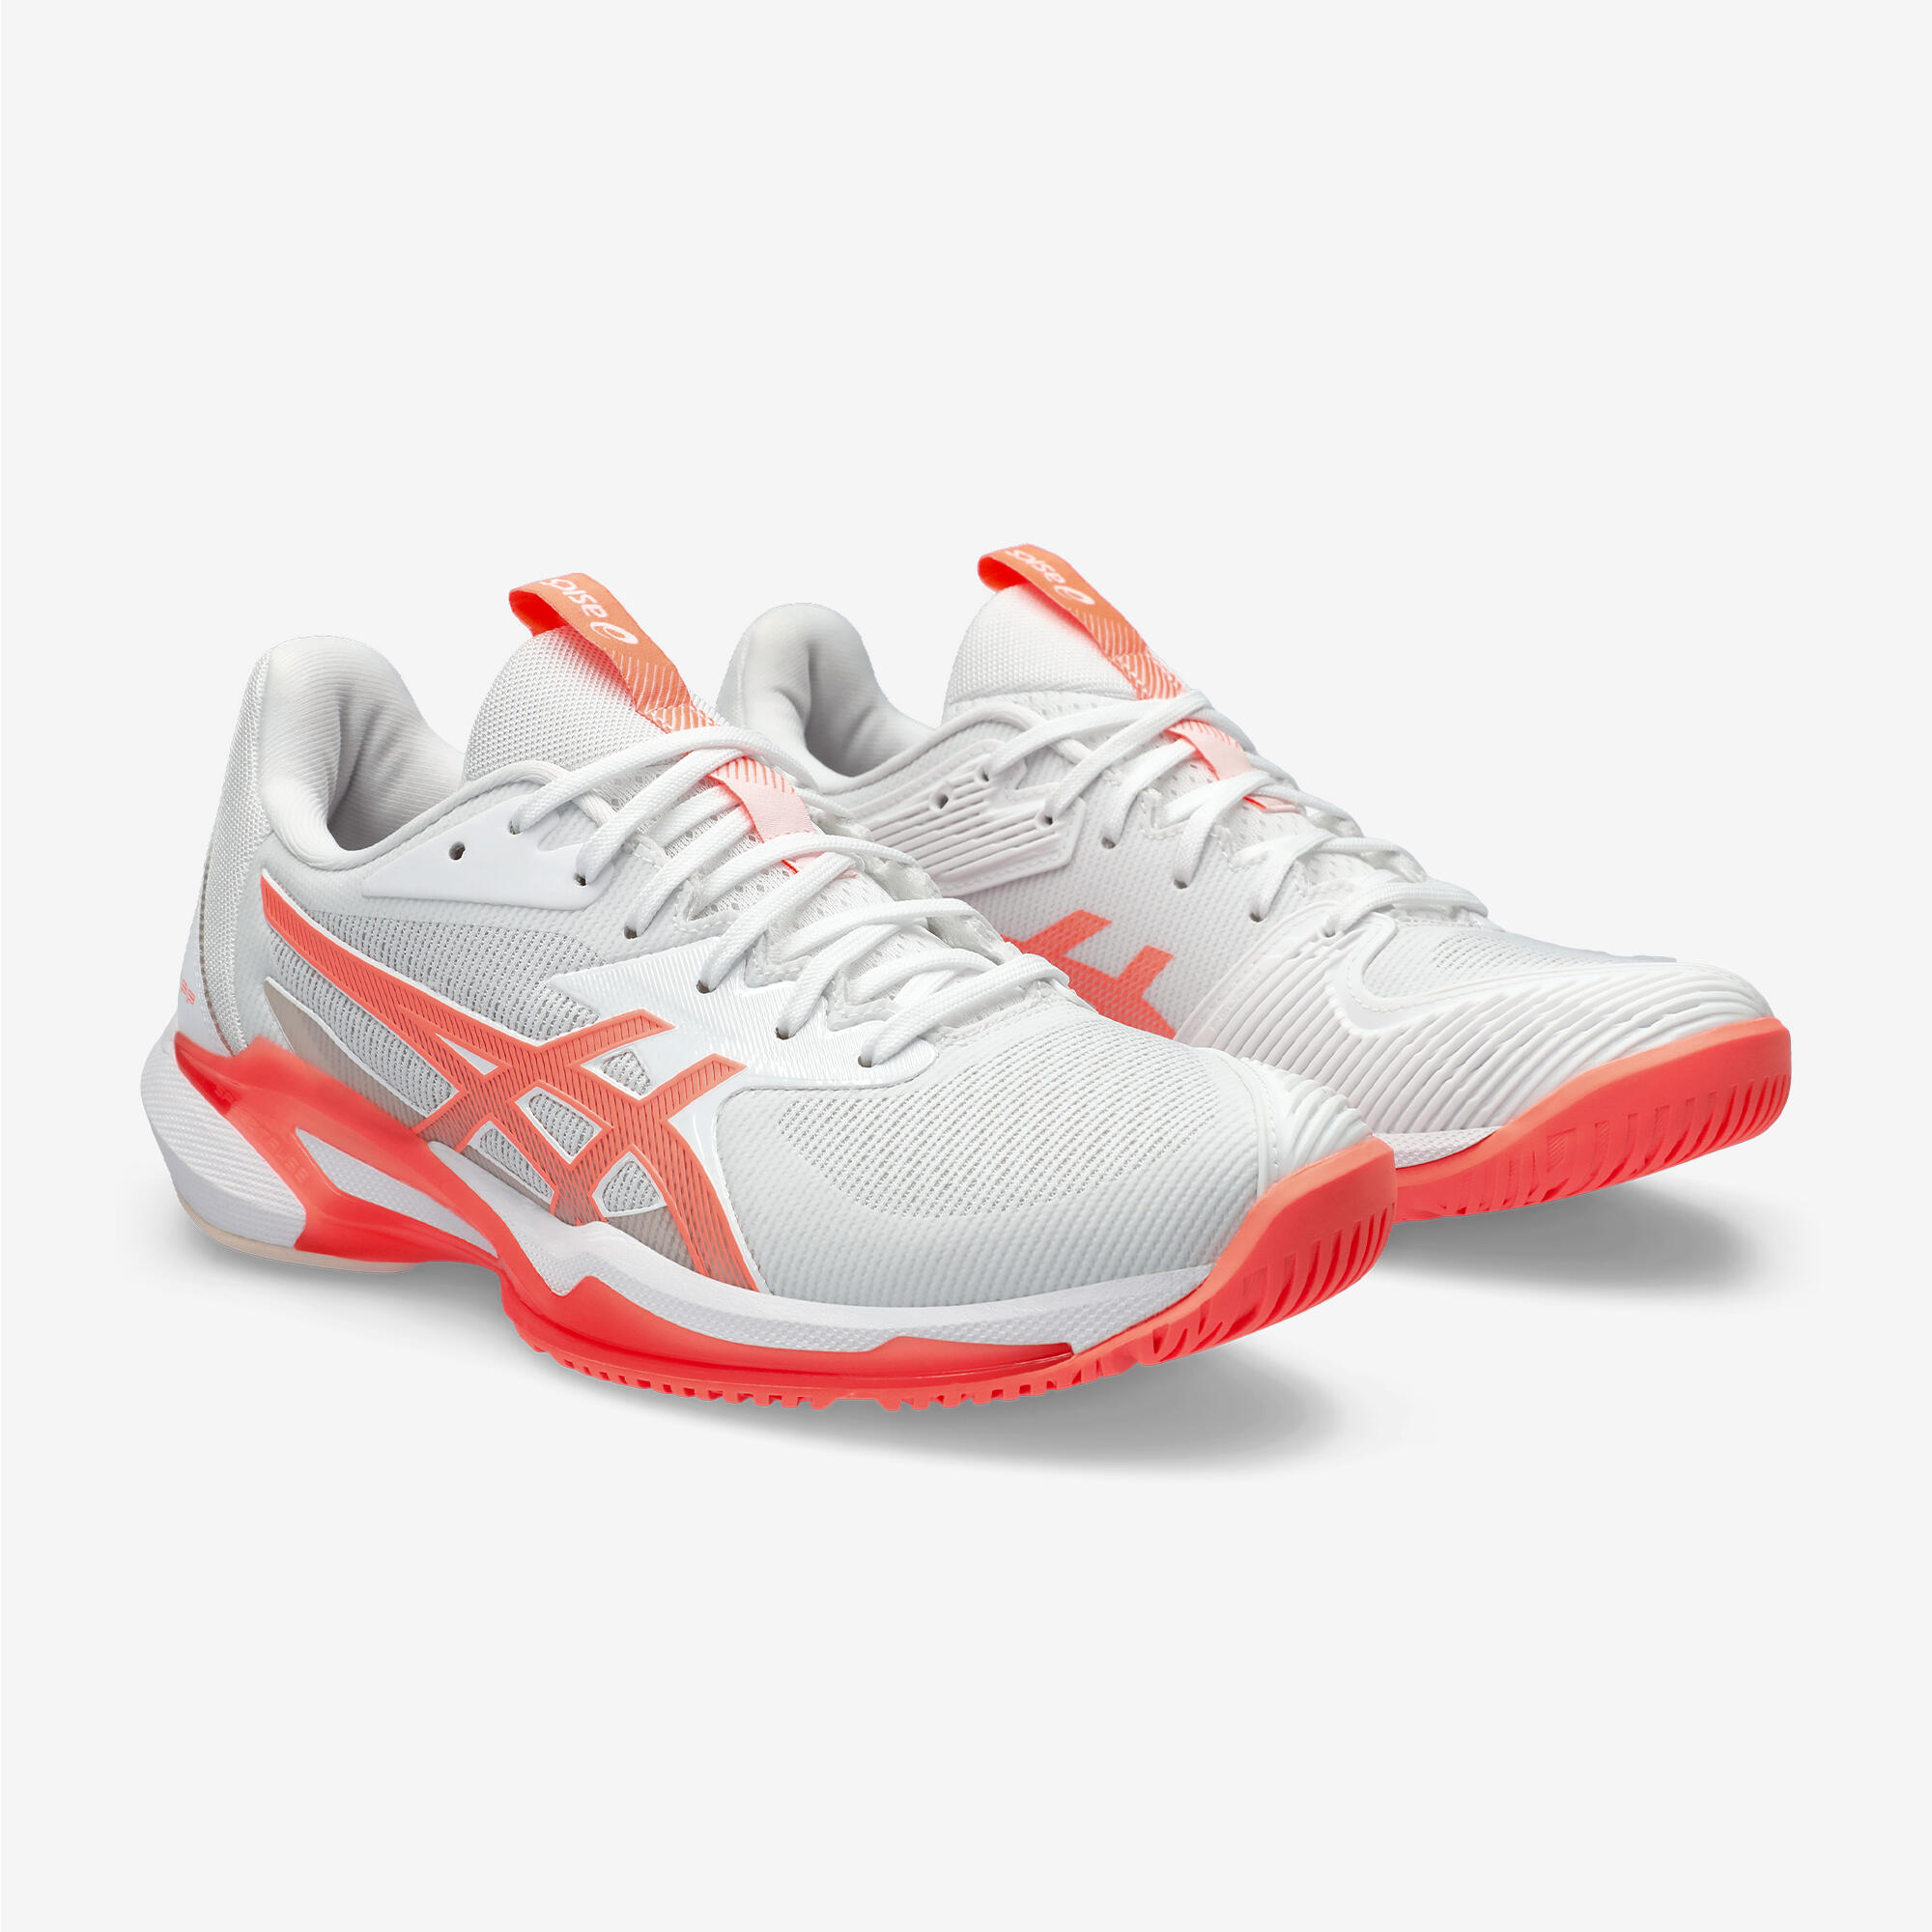 Women's Tennis Multicourt Shoes Gel Solution Speed FF 3 - White/Orange 4/7